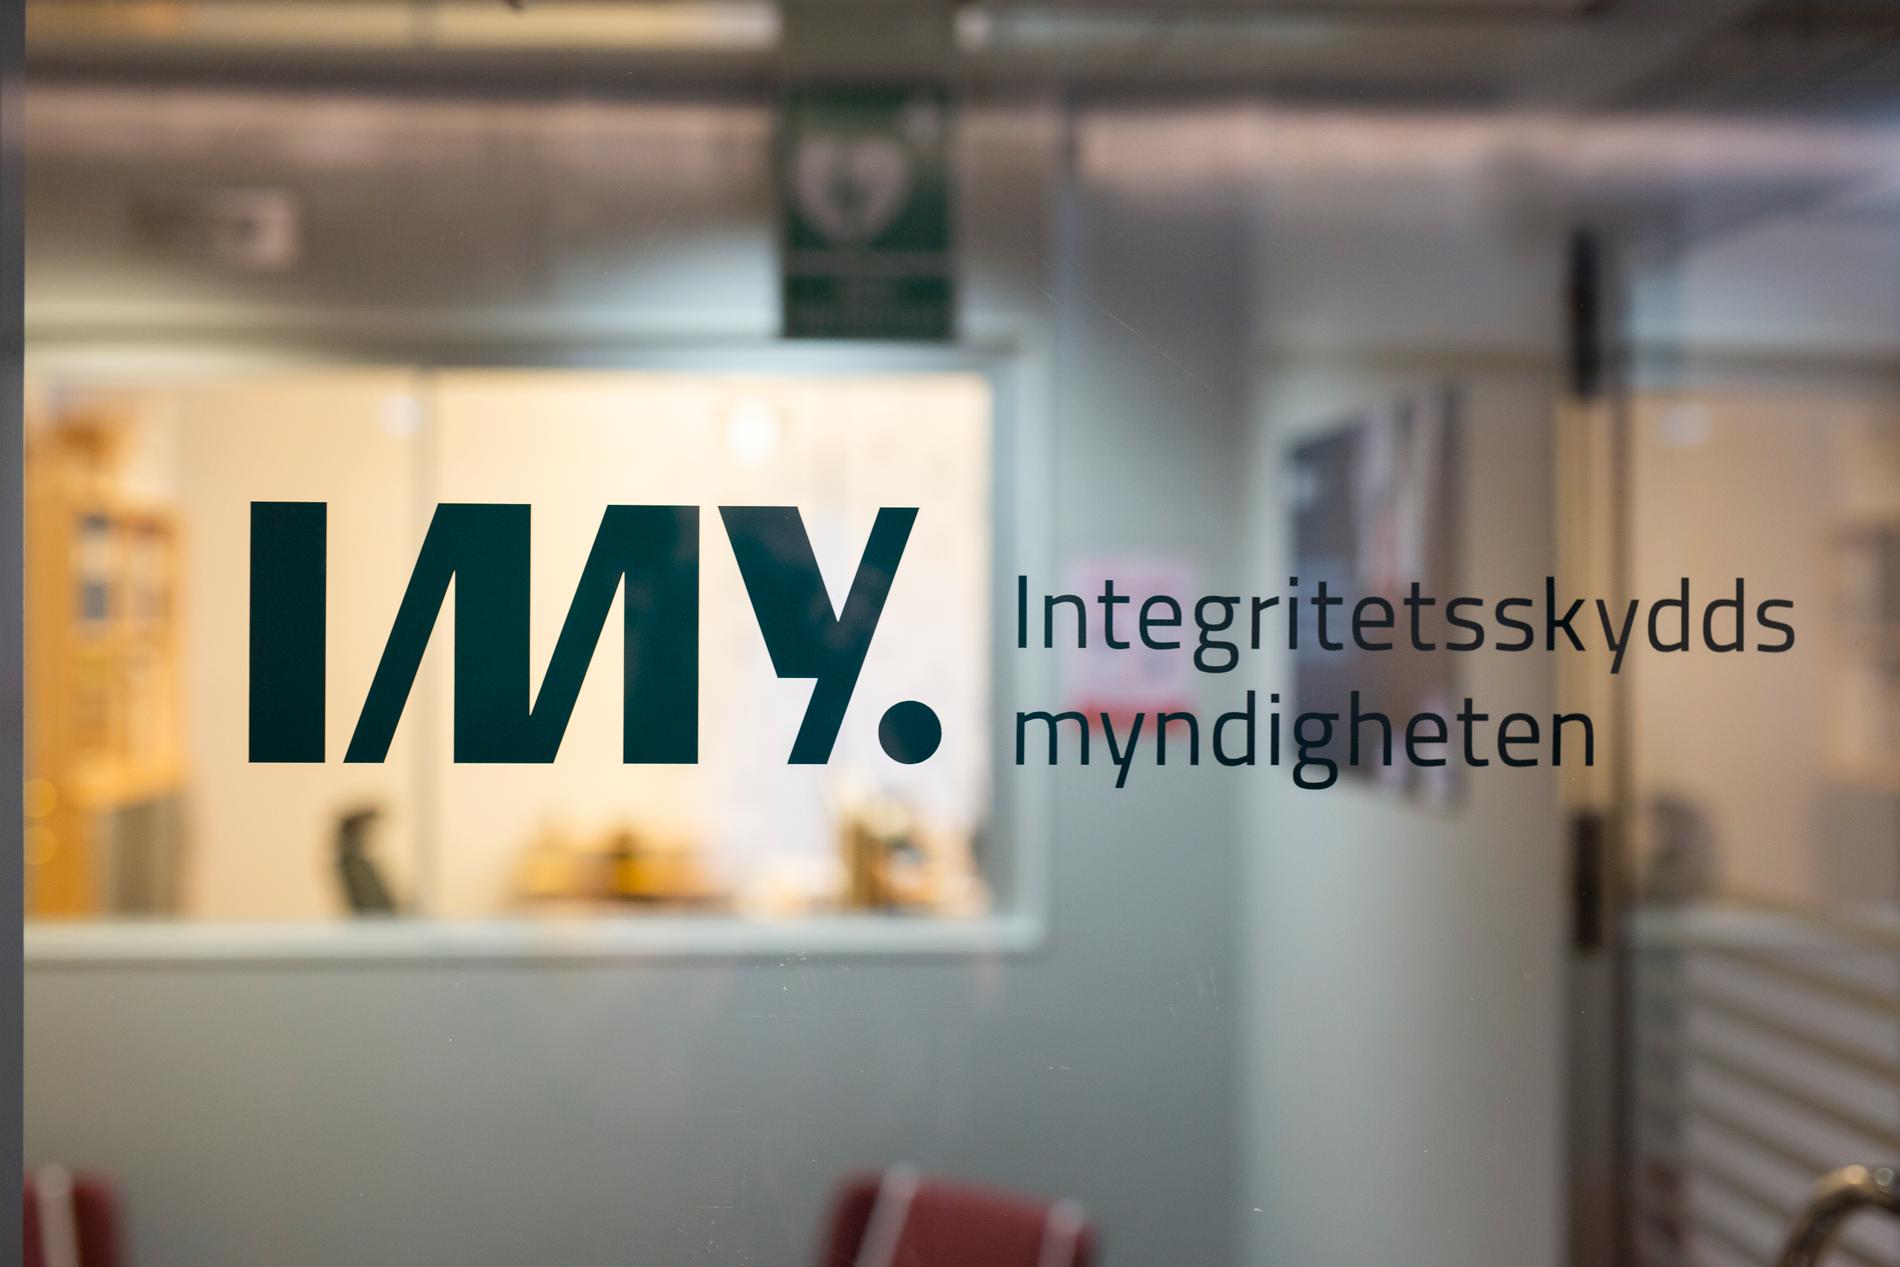 Bland annat Åklagarmyndigheten och Statistiska centralbyrån har anmält sig själva till Integritetskyddsmyndigheten (IMY).